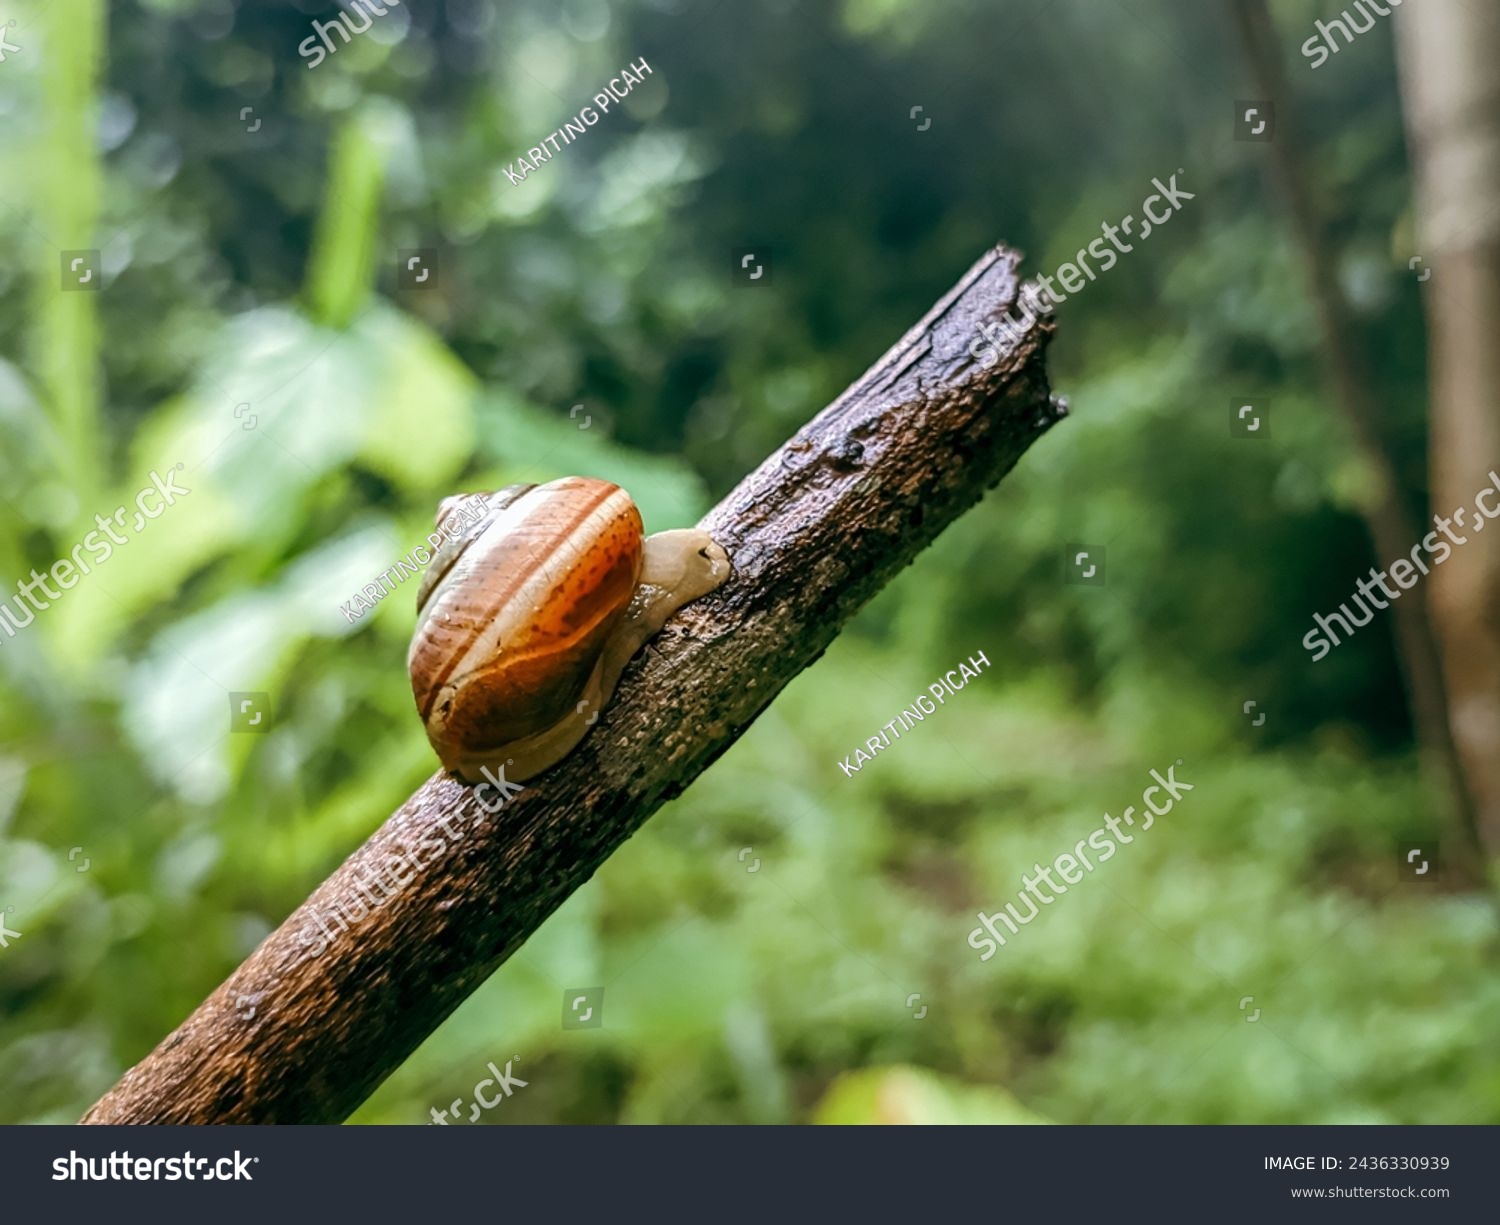 Gastropod mollusk snail walking on a twig #2436330939